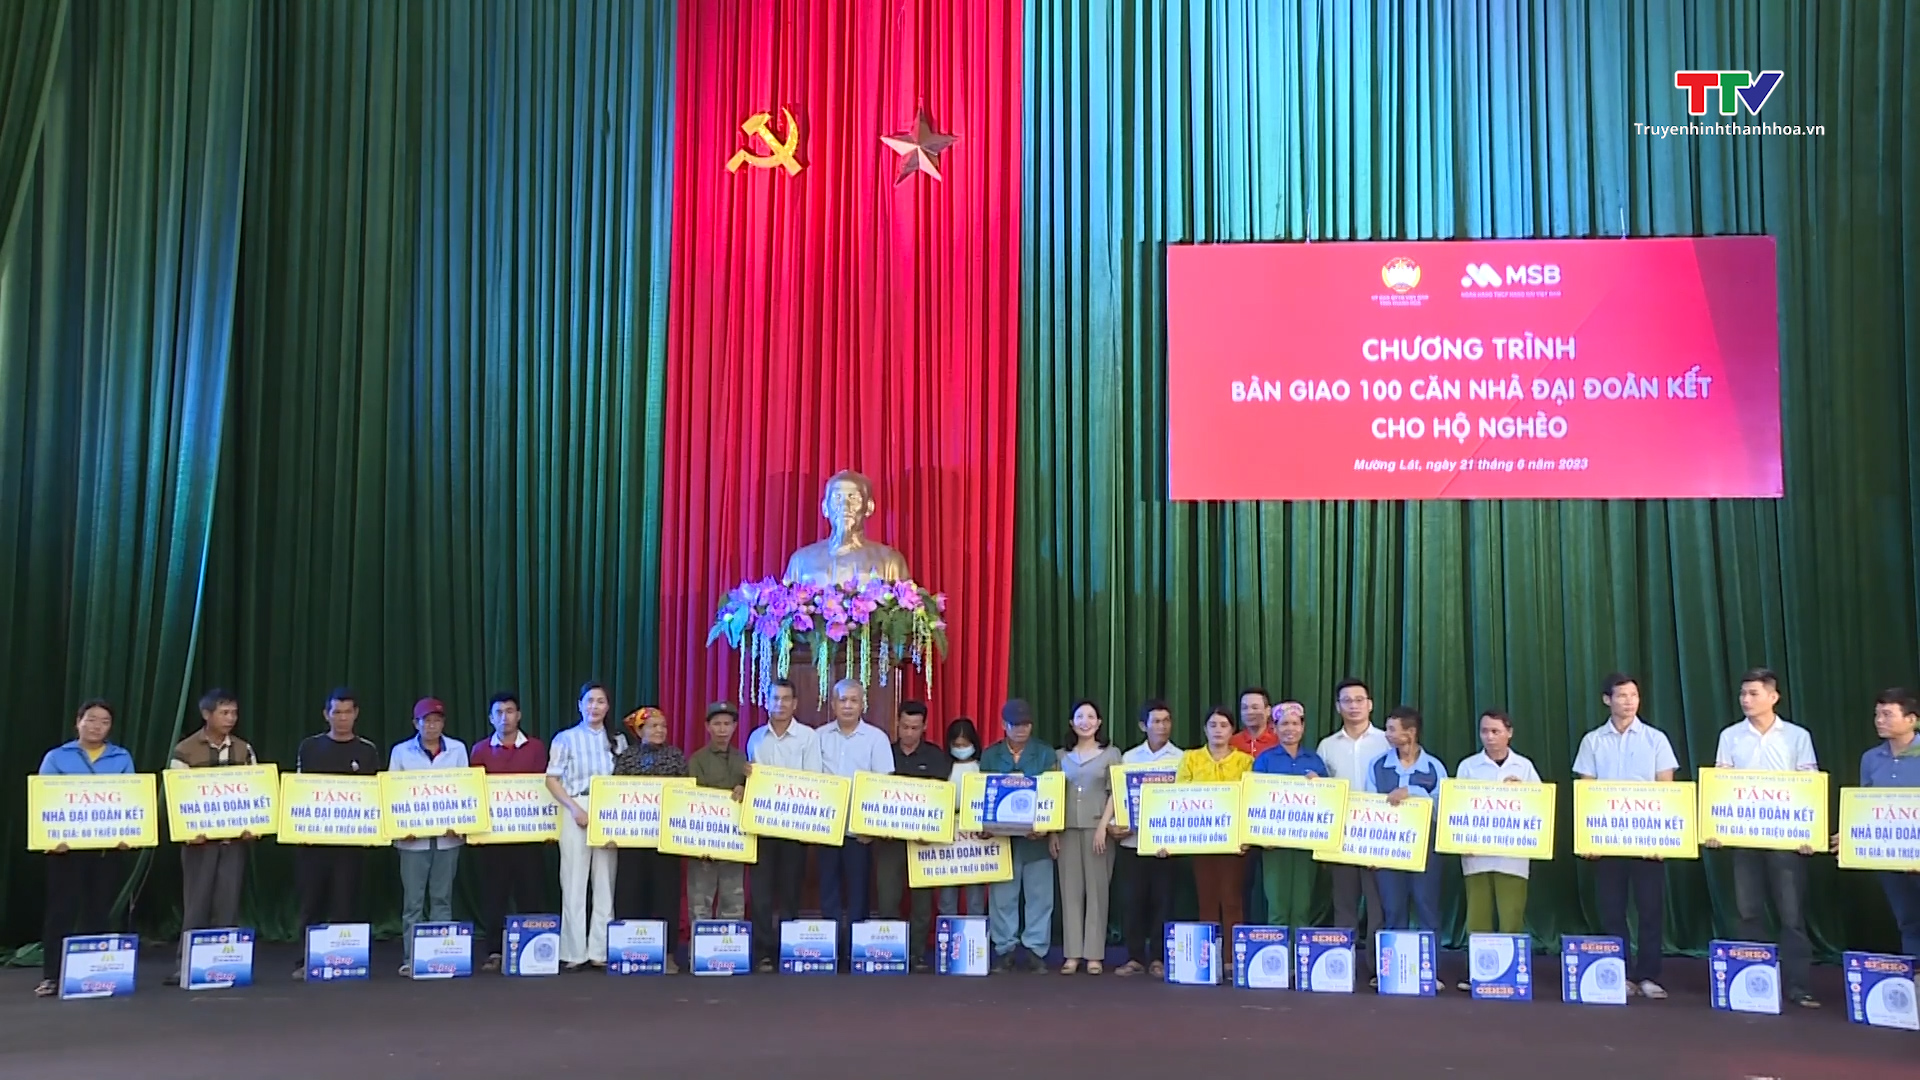 Bàn giao 100 căn nhà đại đoàn kết cho các hộ nghèo huyện Mường Lát - Ảnh 4.